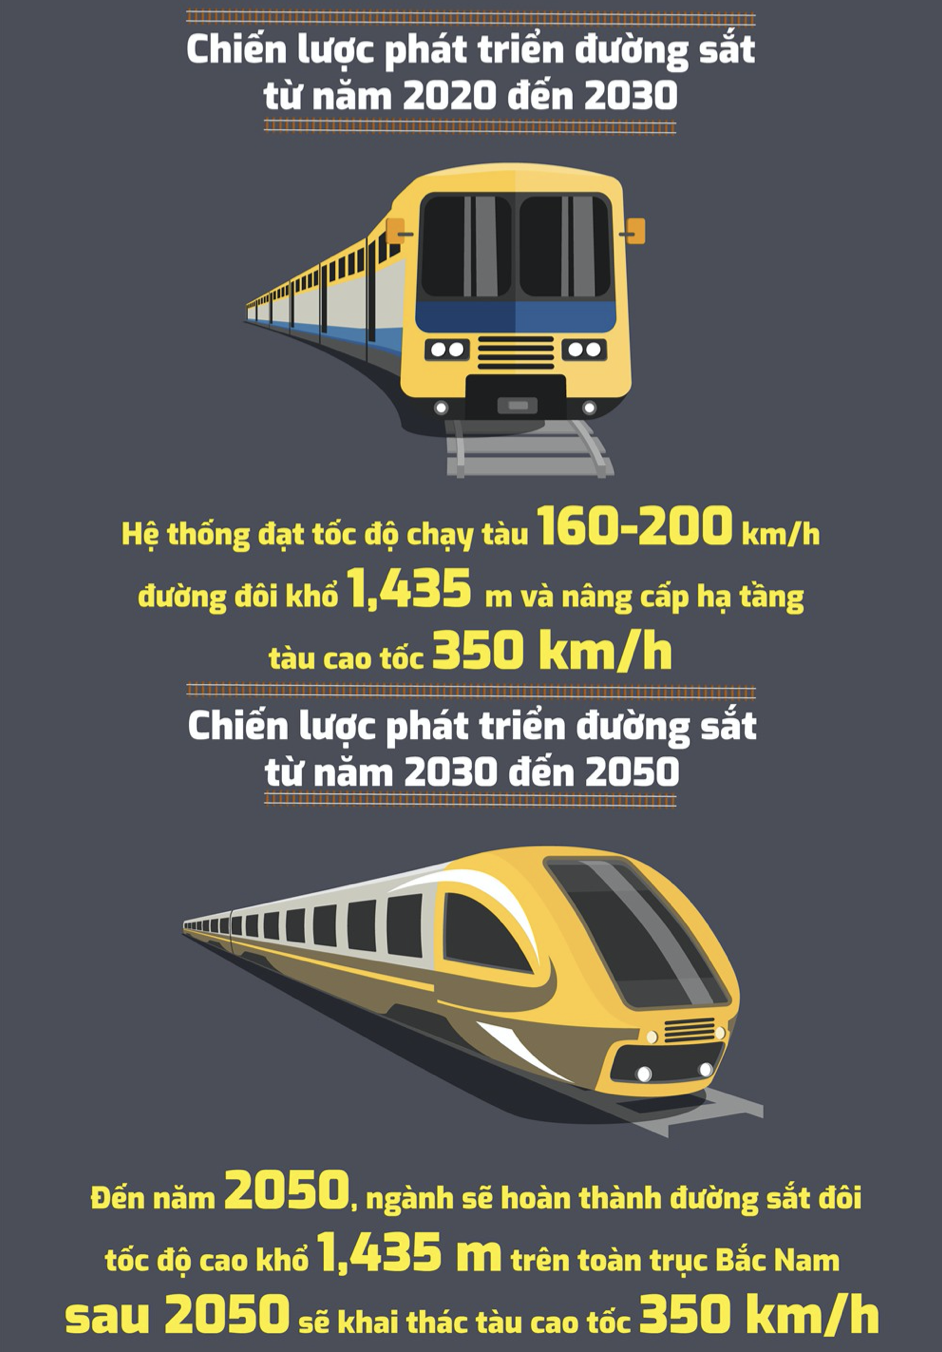 Quy hoạch đường sắt từ nay tới 2050.